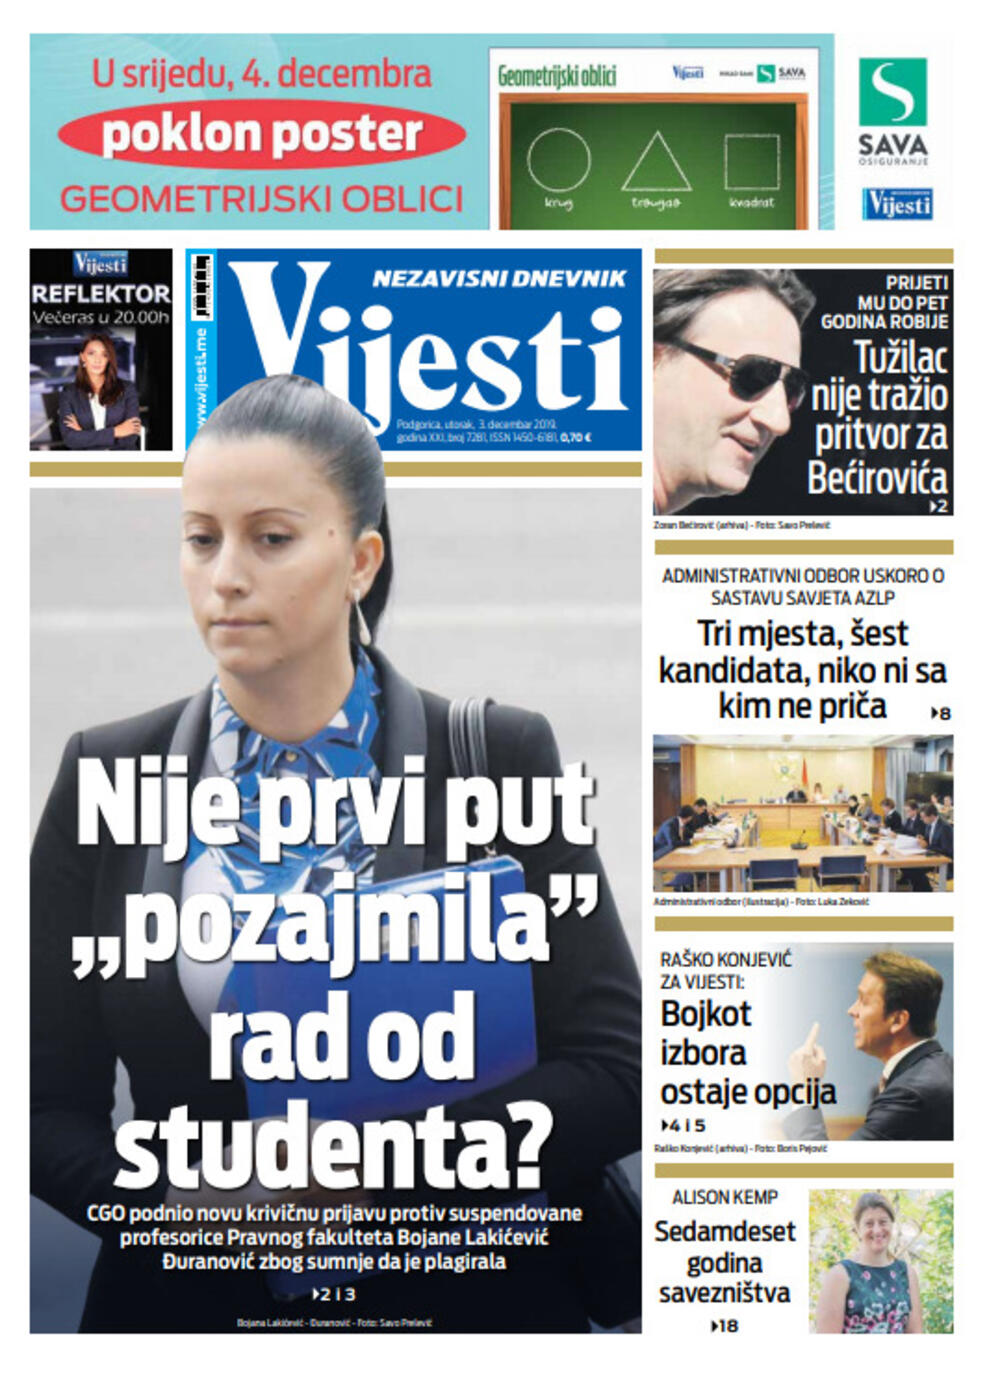 Naslovna strana "Vijesti", Foto: Vijesti